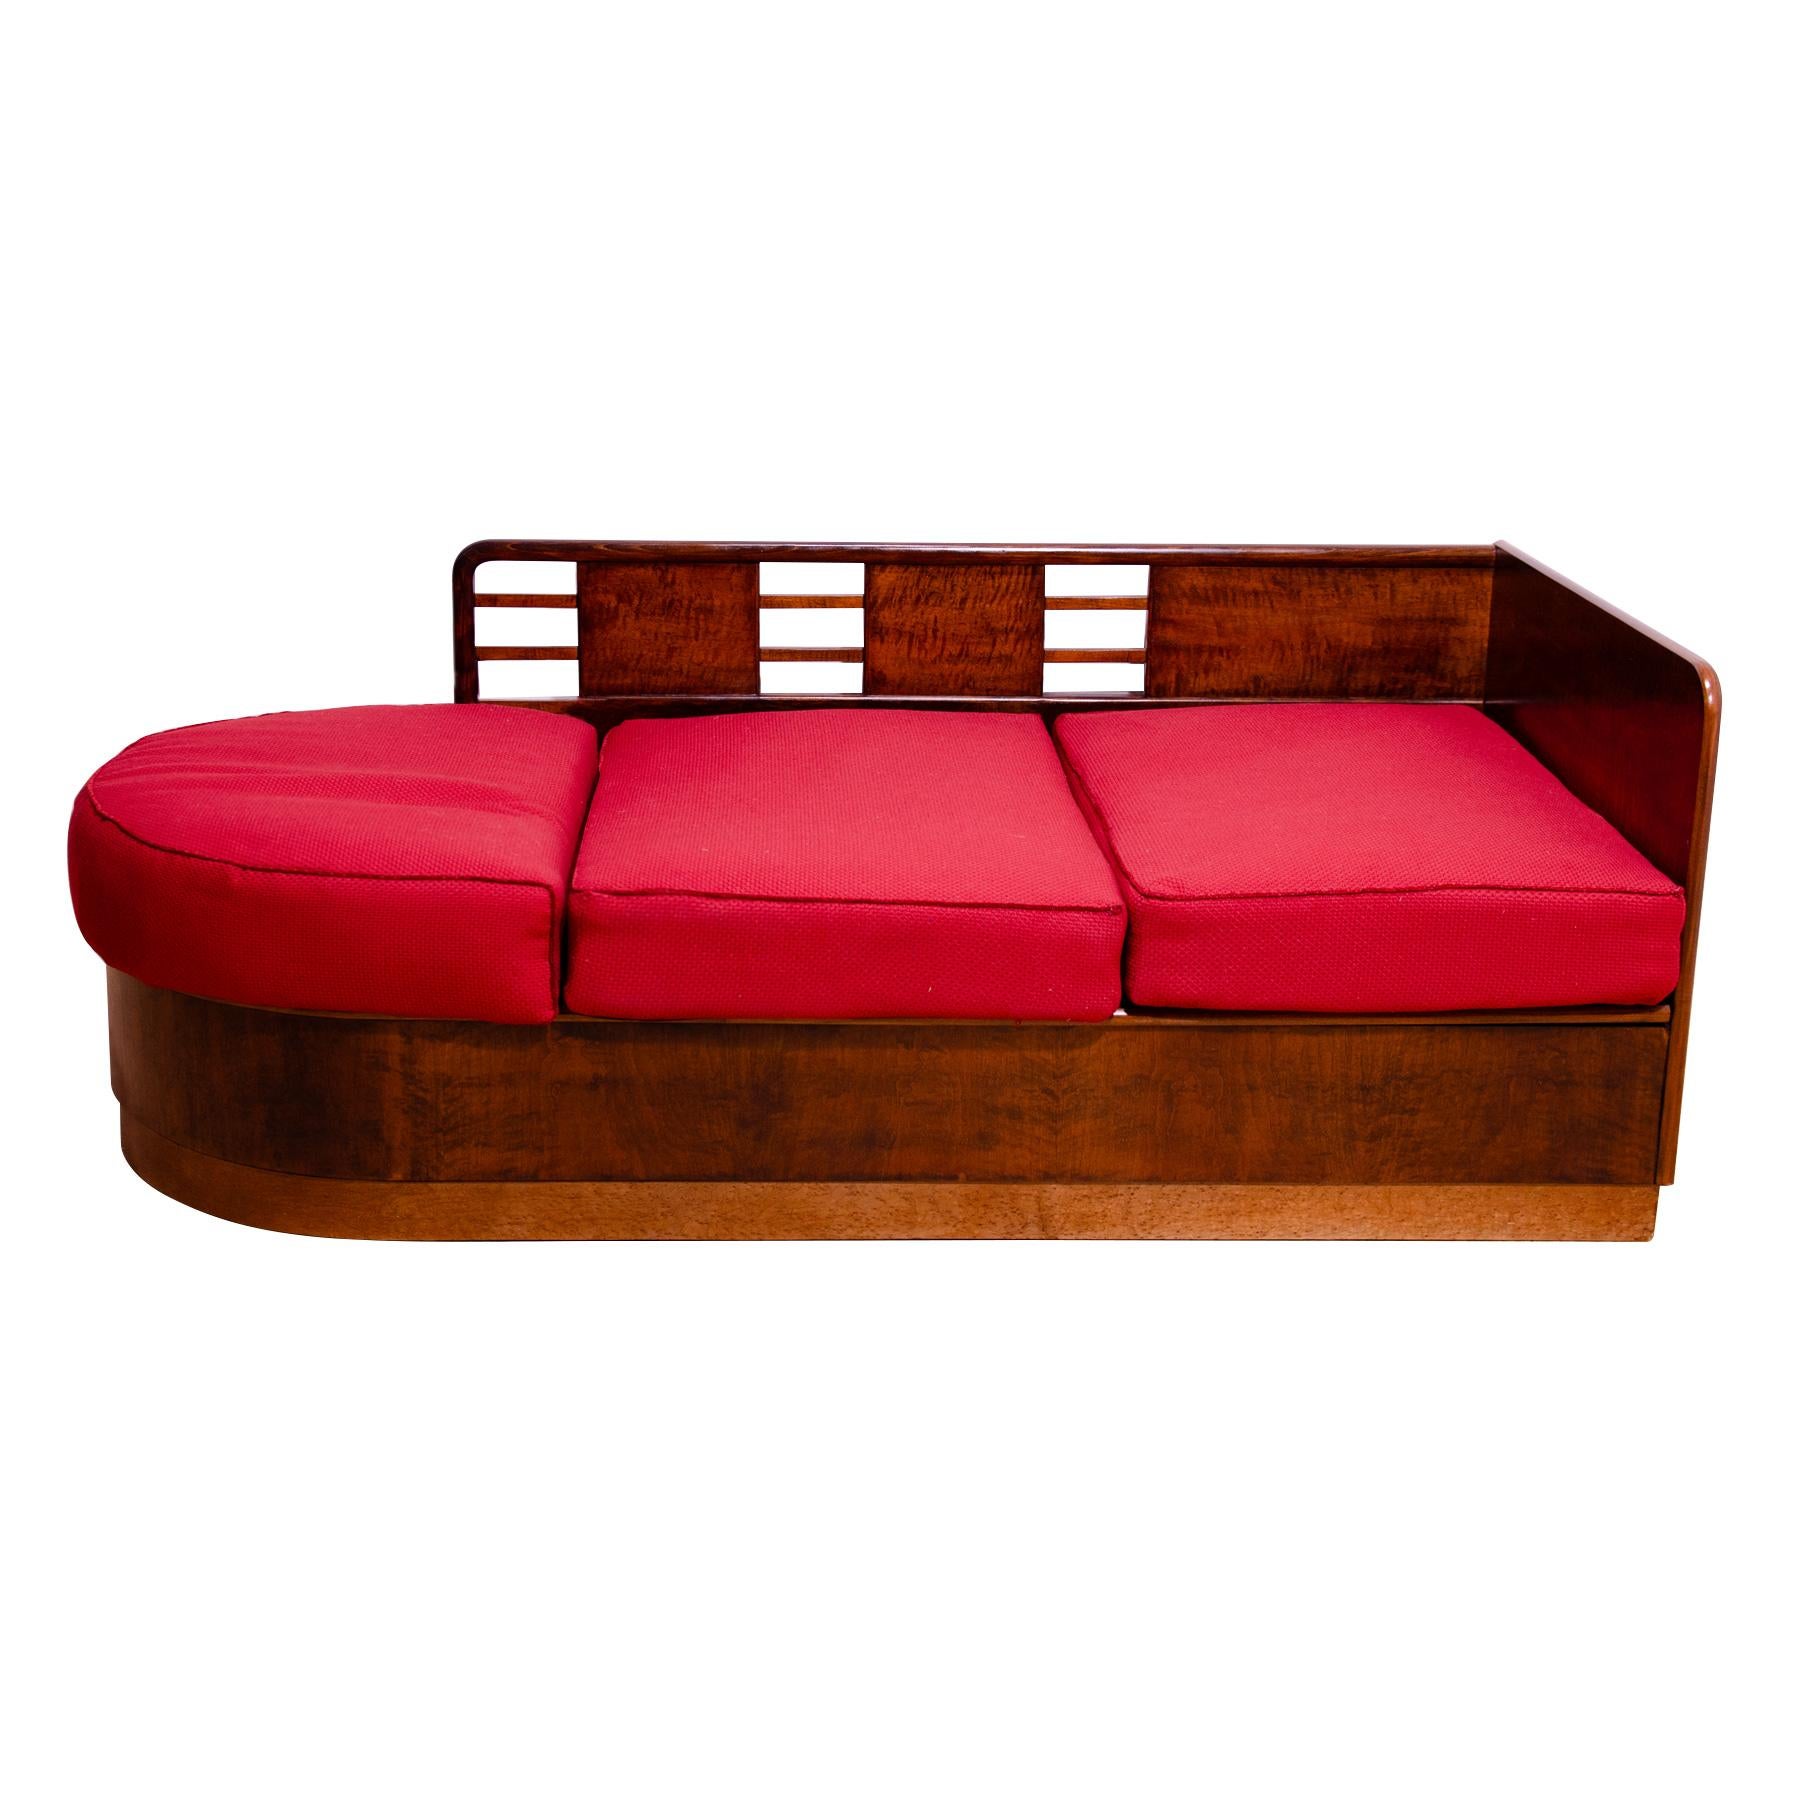 Ce canapé de style ART DECO a été conçu et fabriqué dans les années 1930 dans l'ancienne Tchécoslovaquie. Il a probablement été fabriqué par la société Líšen.
Il présente un design très intéressant, semblable à la forme d'un bateau.
Ce design simple